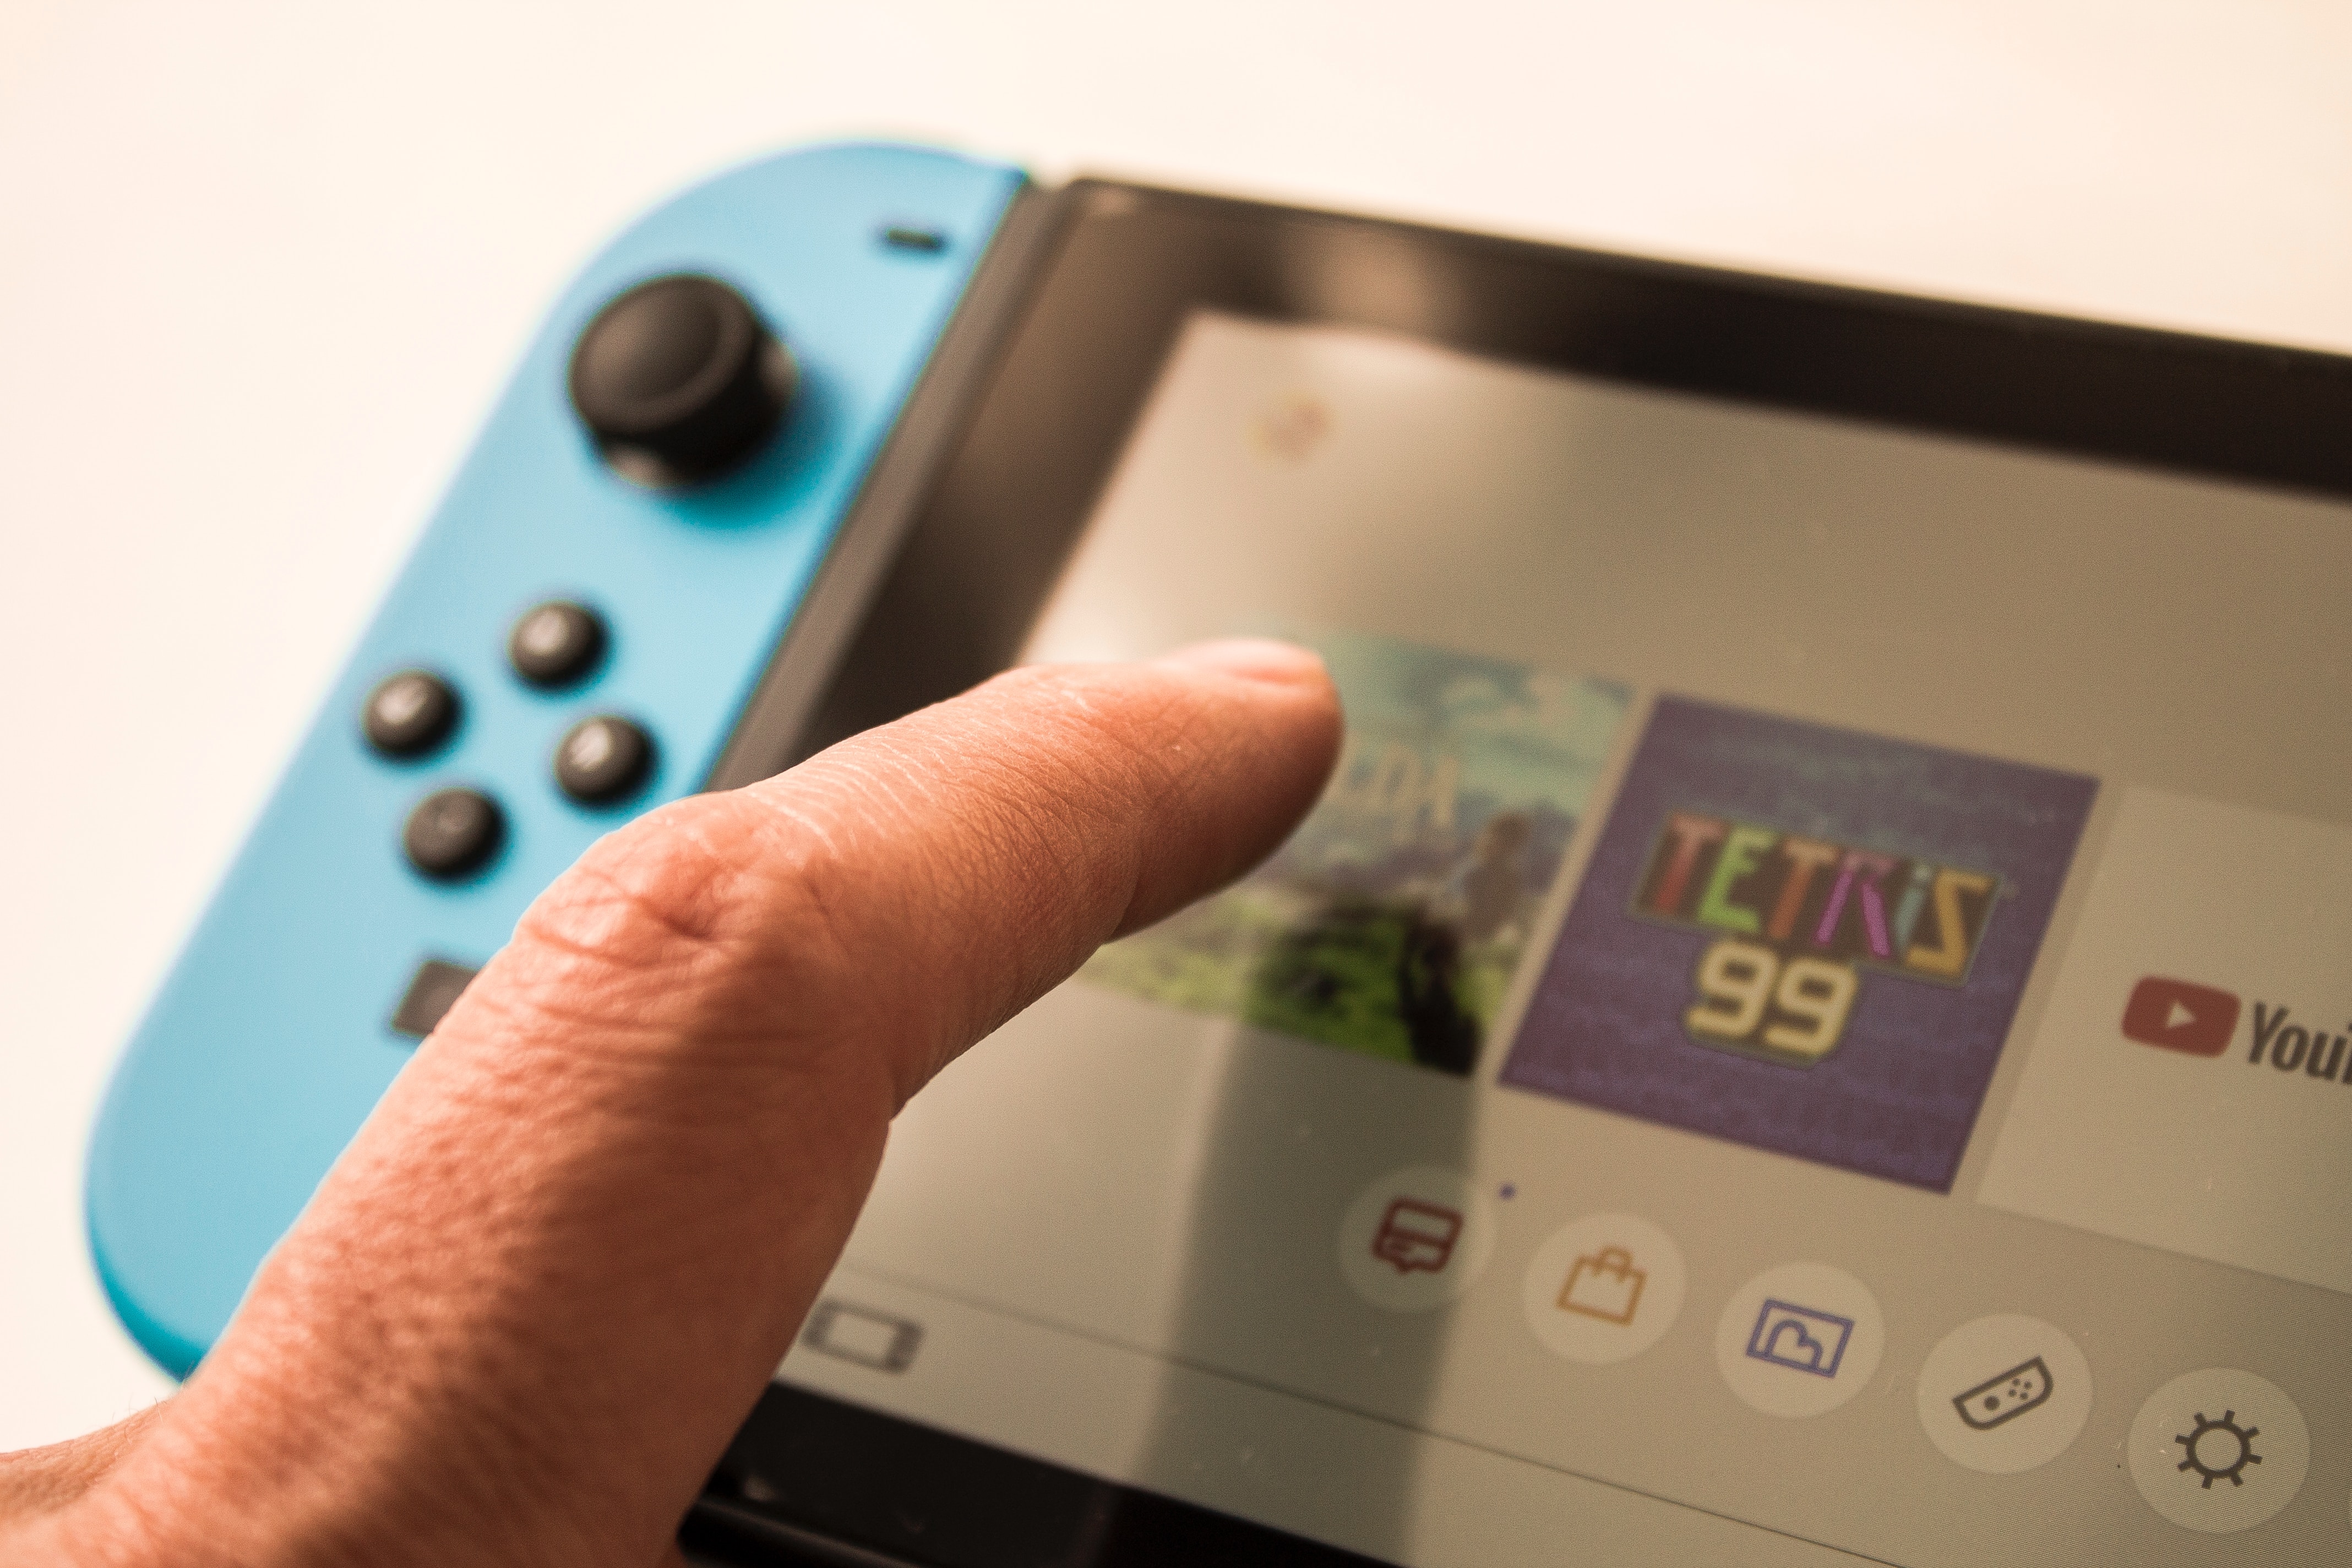 Nintendo Switch: Jogos, serviços, acessórios e mais